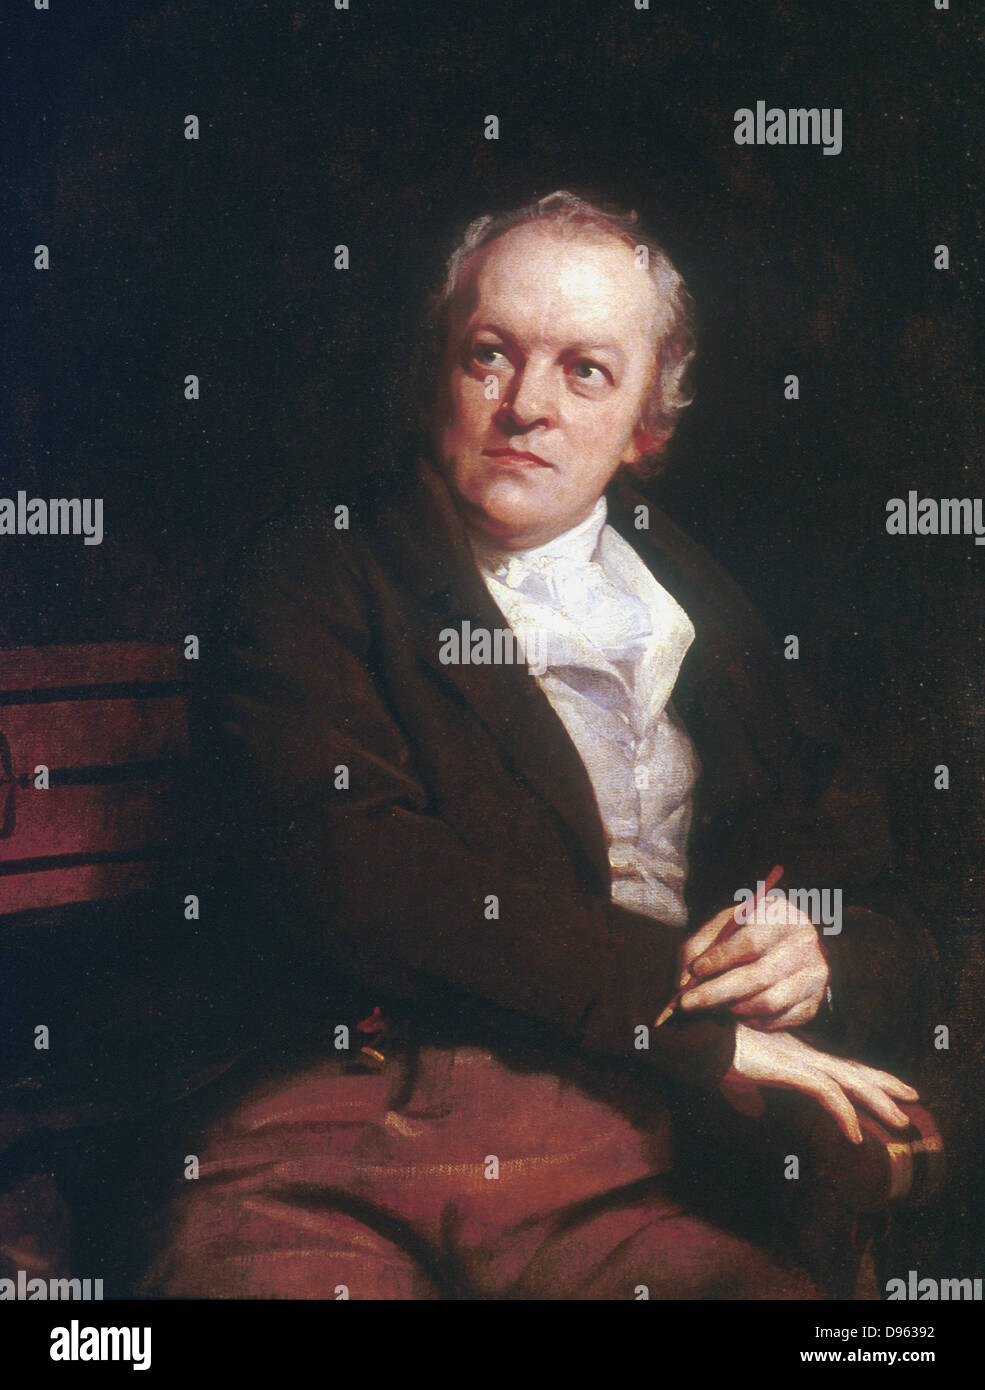 William Blake (1757-1827), poète mystique anglaise, artiste et graveur. 1807 portrait par Thomas Phillips. National Portrait Gallery, Londres Banque D'Images